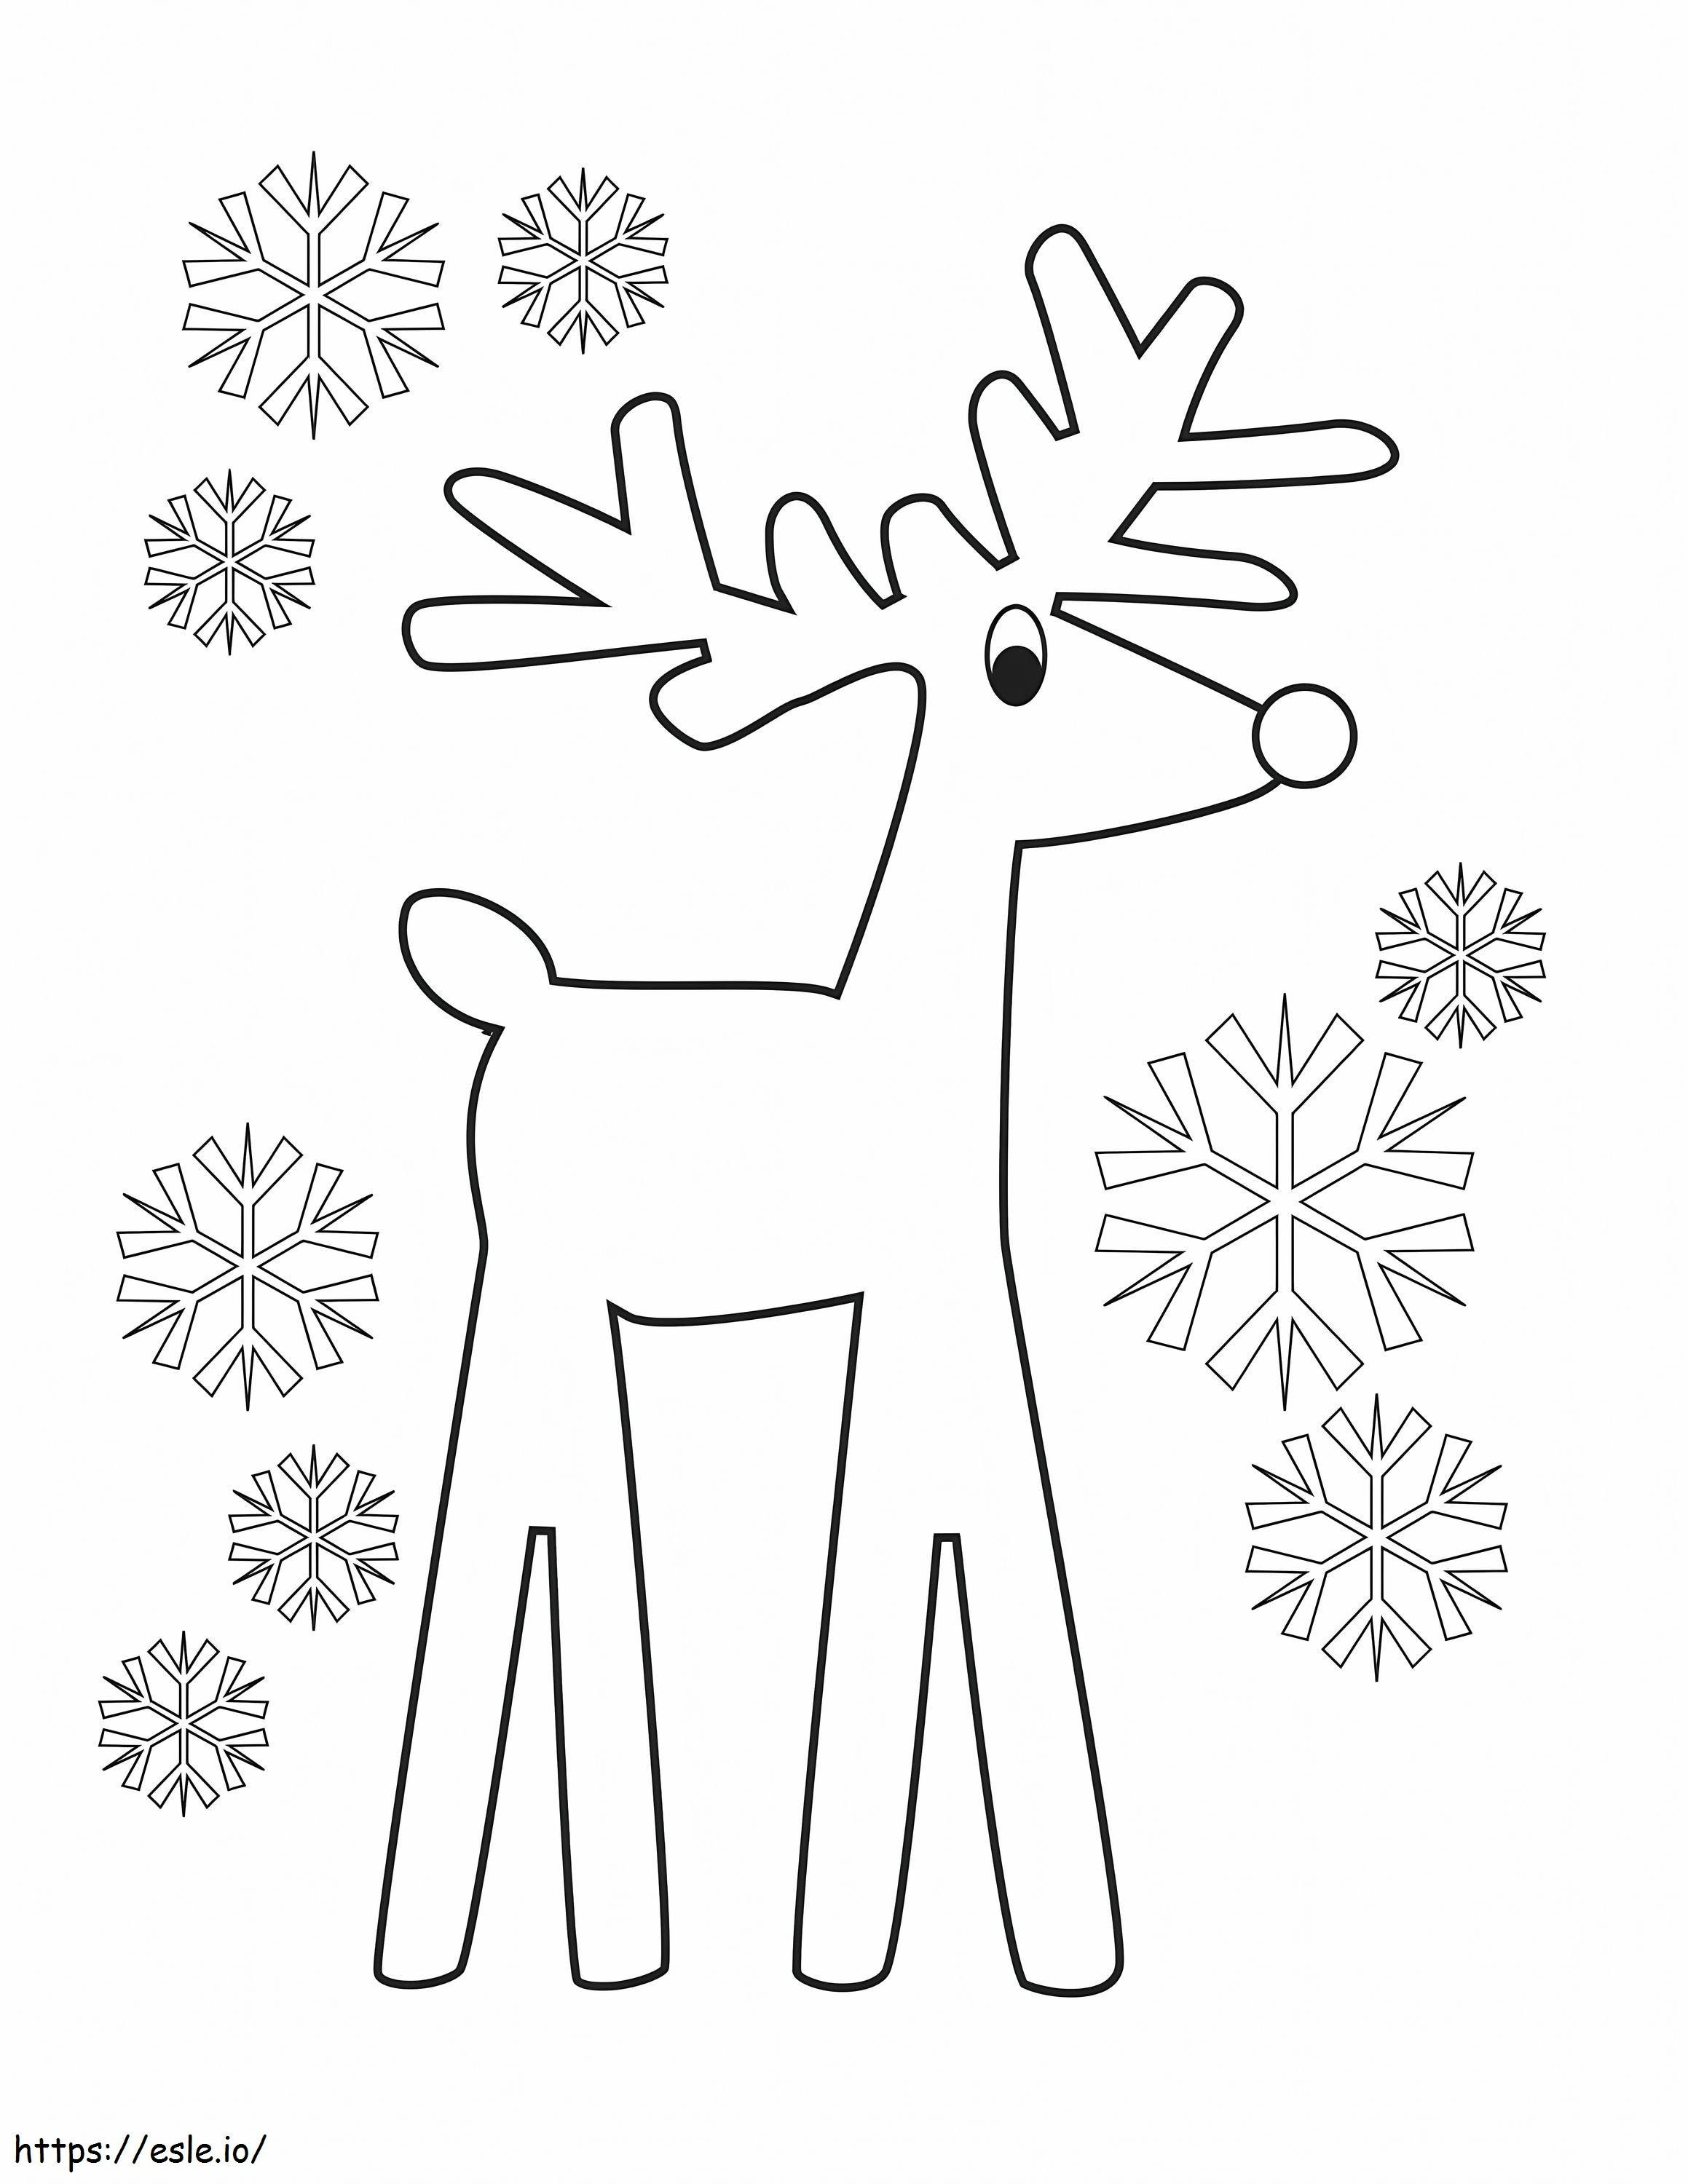 Easy Reindeer coloring page